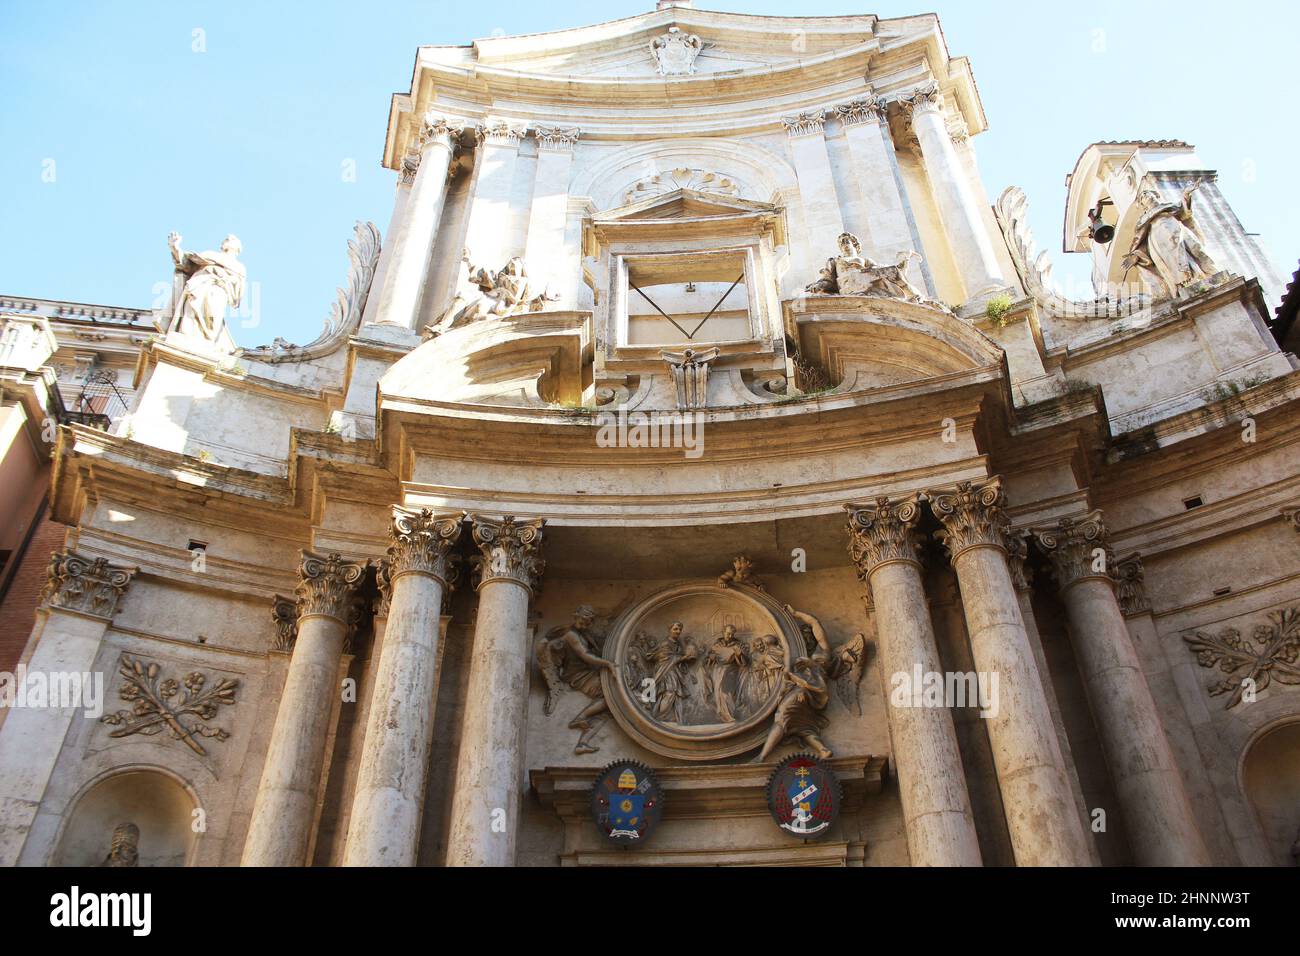 Facade of San Marcello al Corso church. Stock Photo